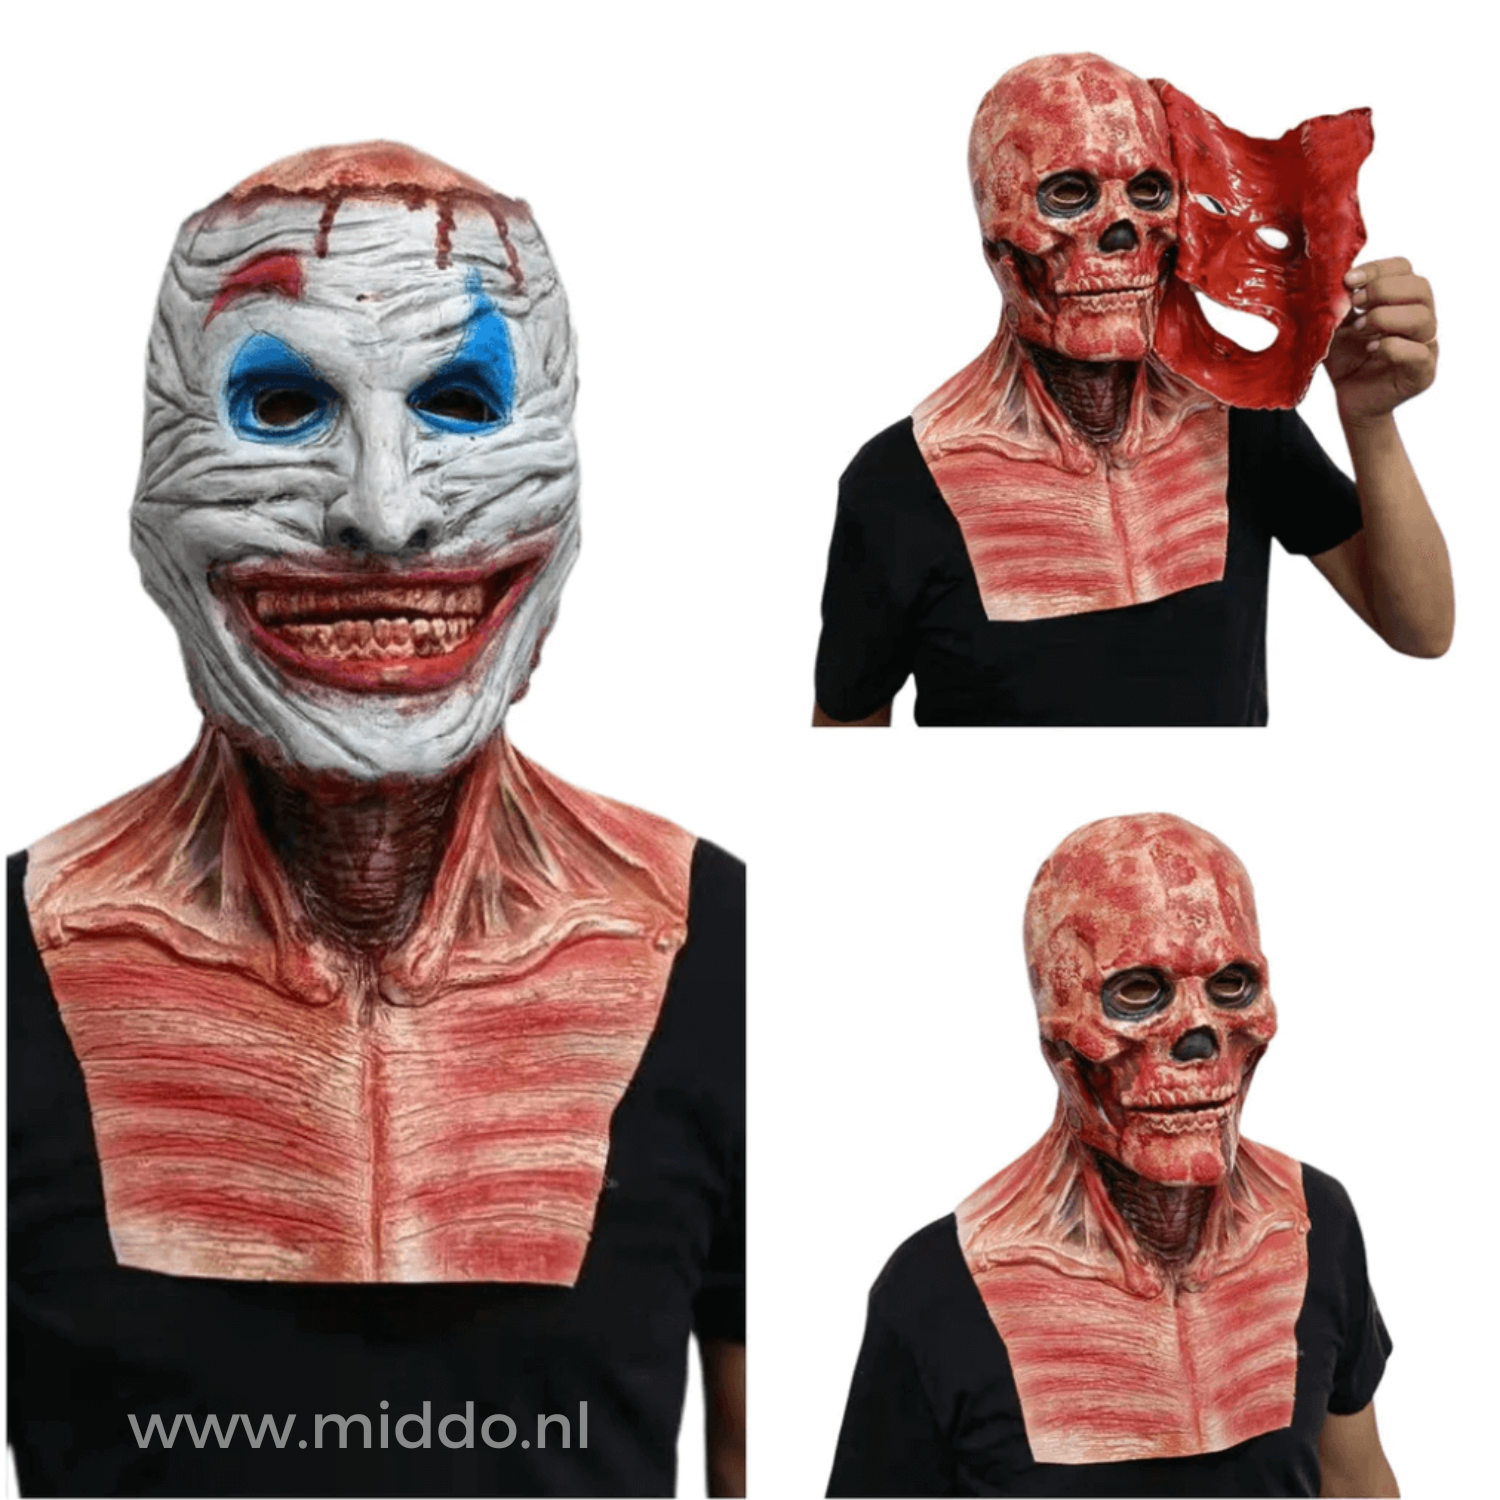 Man met ultra realistisch peel off masker, afneembaar masker toont schedel eronder.